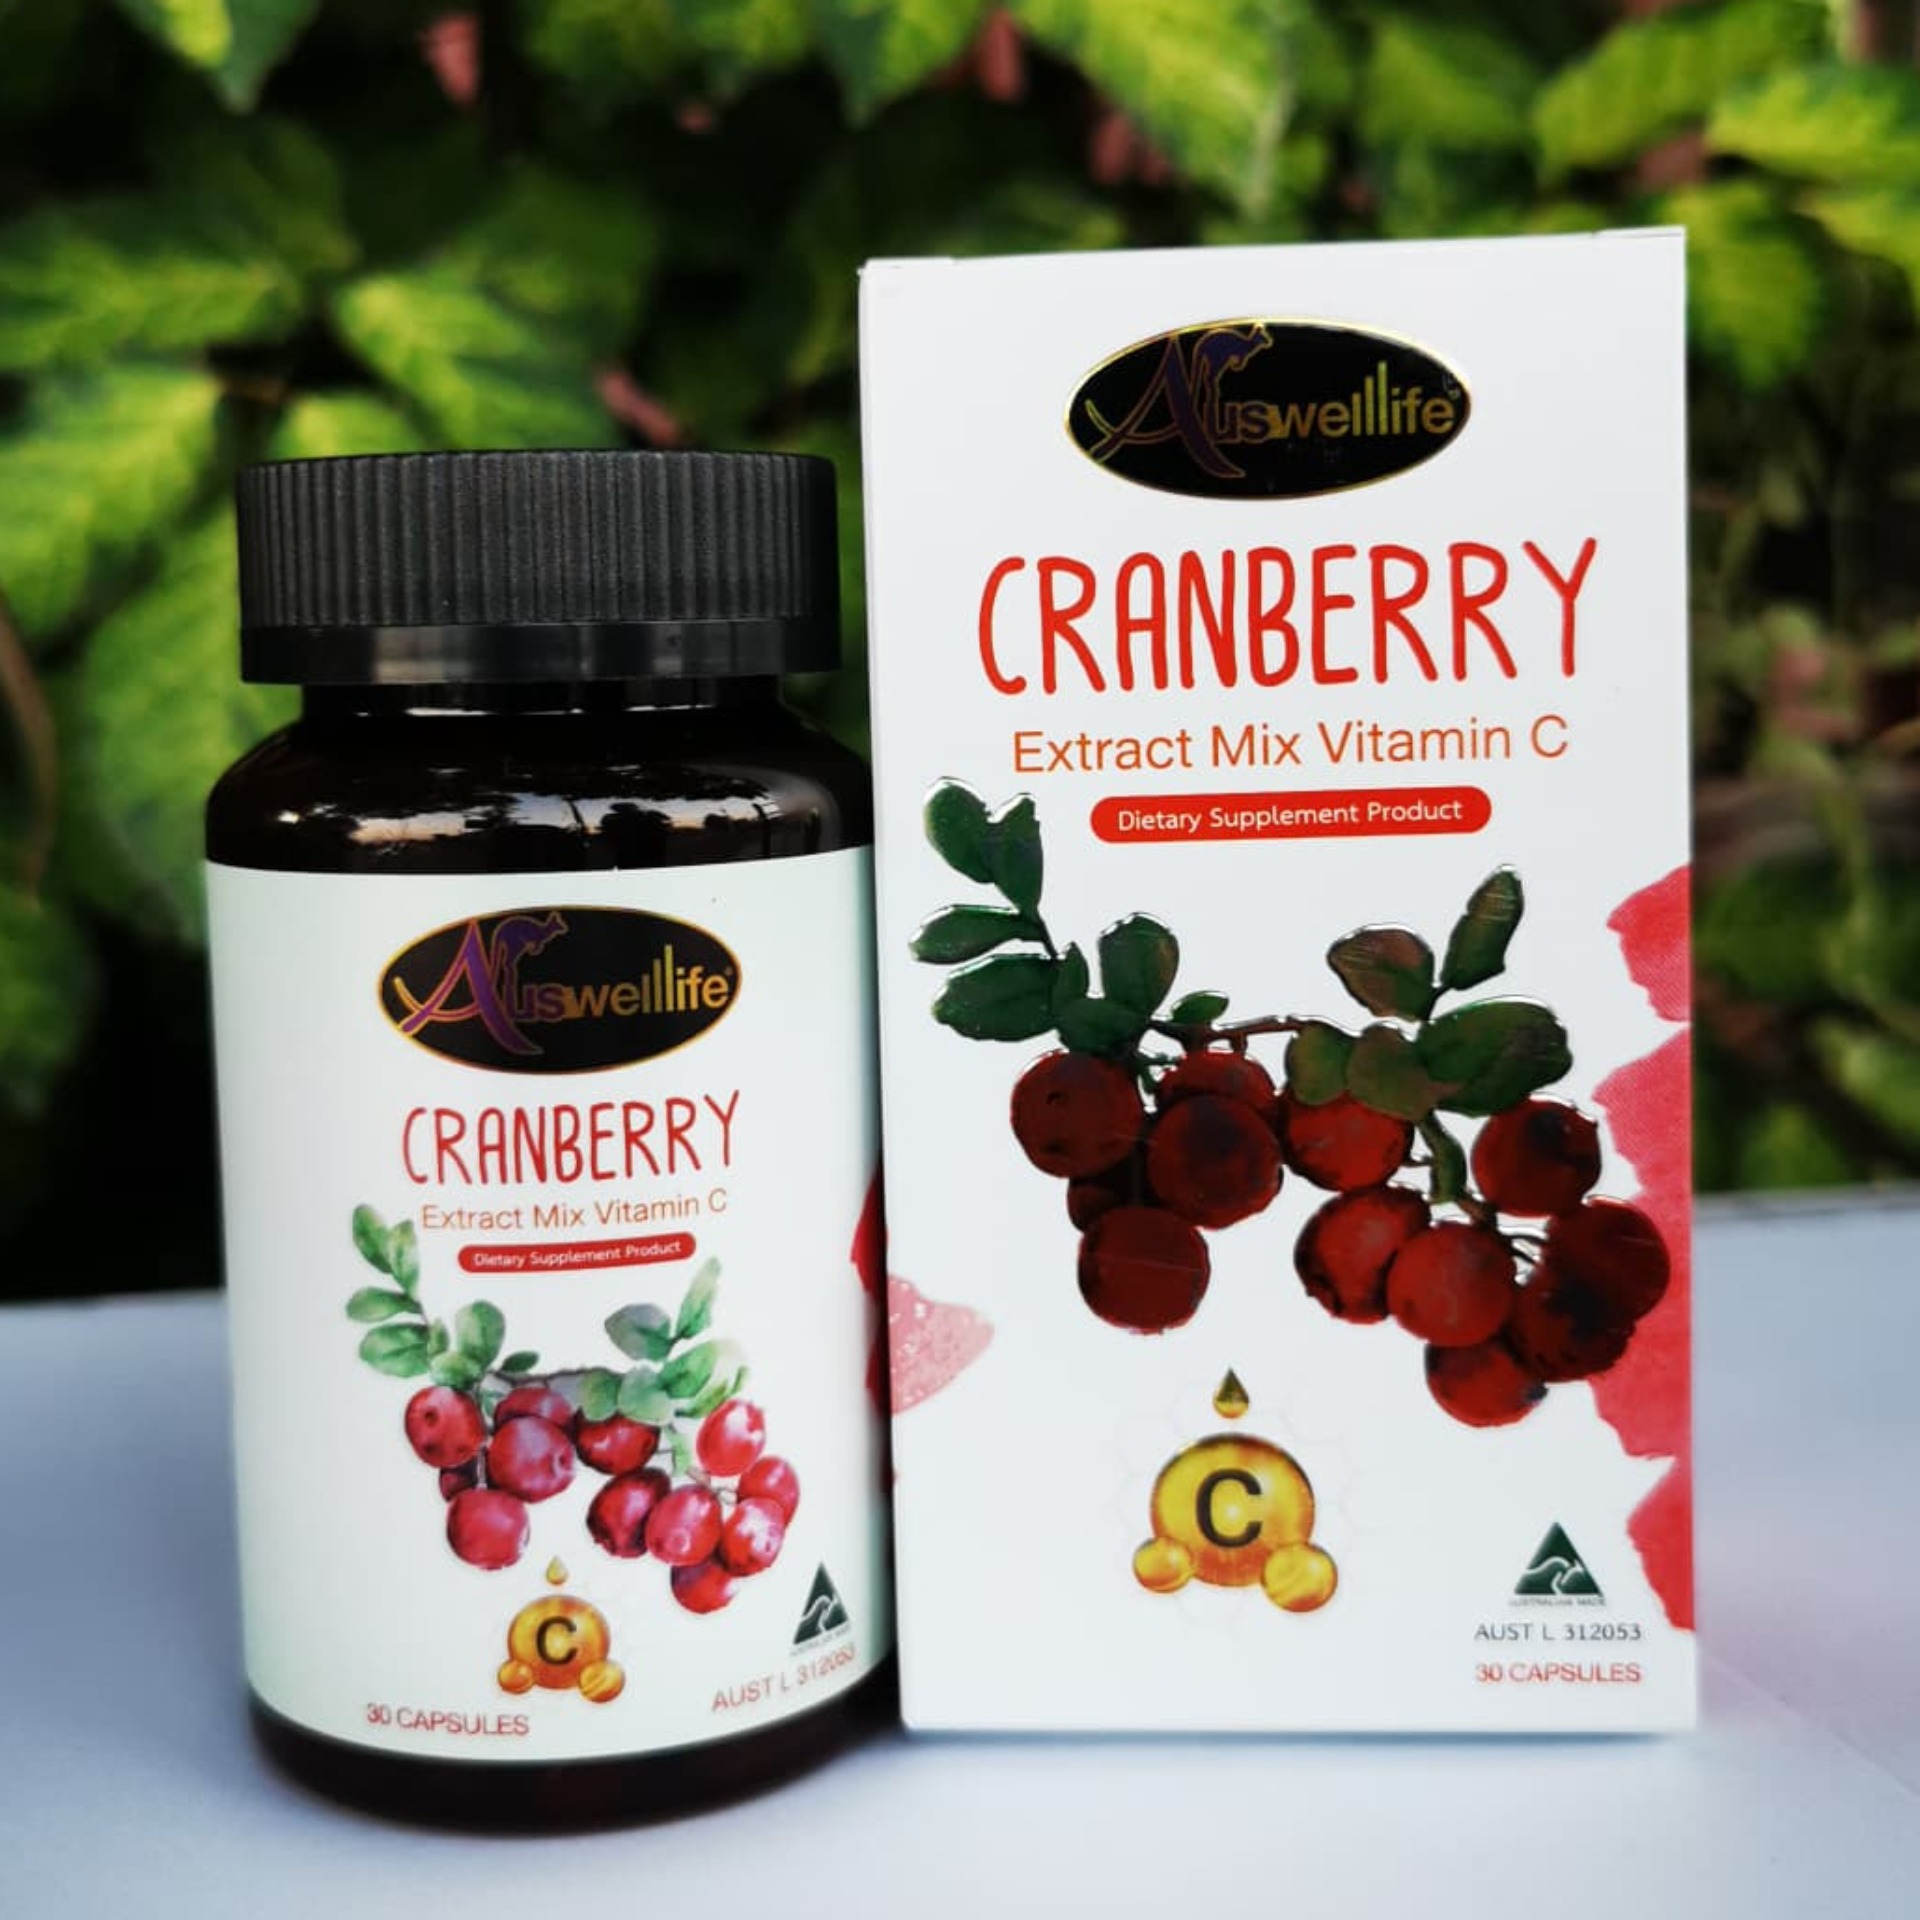 (ส่งฟรี KERRY ของแท้ 100%) Auswelllife Cranberry Mix Vit C สูตรใหม่ X 2 แครนเบอร์รี่ผสมวิตามินซี ( 1 กระปุก 30 แคปซูล )